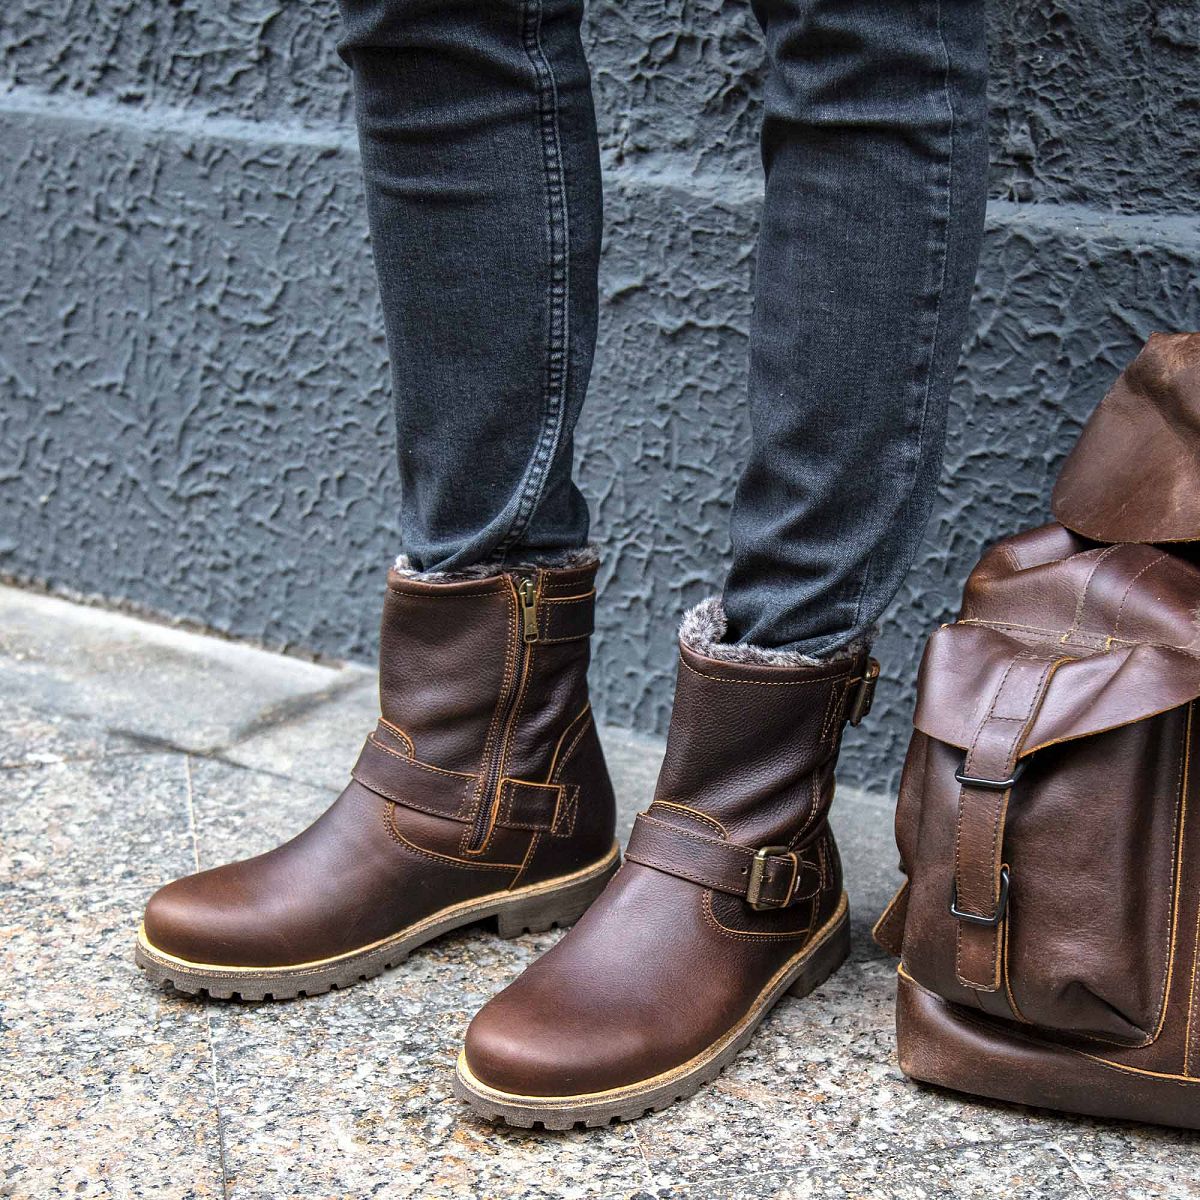 Luipaard Voorwaarde helpen Best Panama Jack Leather Boots 2023 - Up To 64% OFF